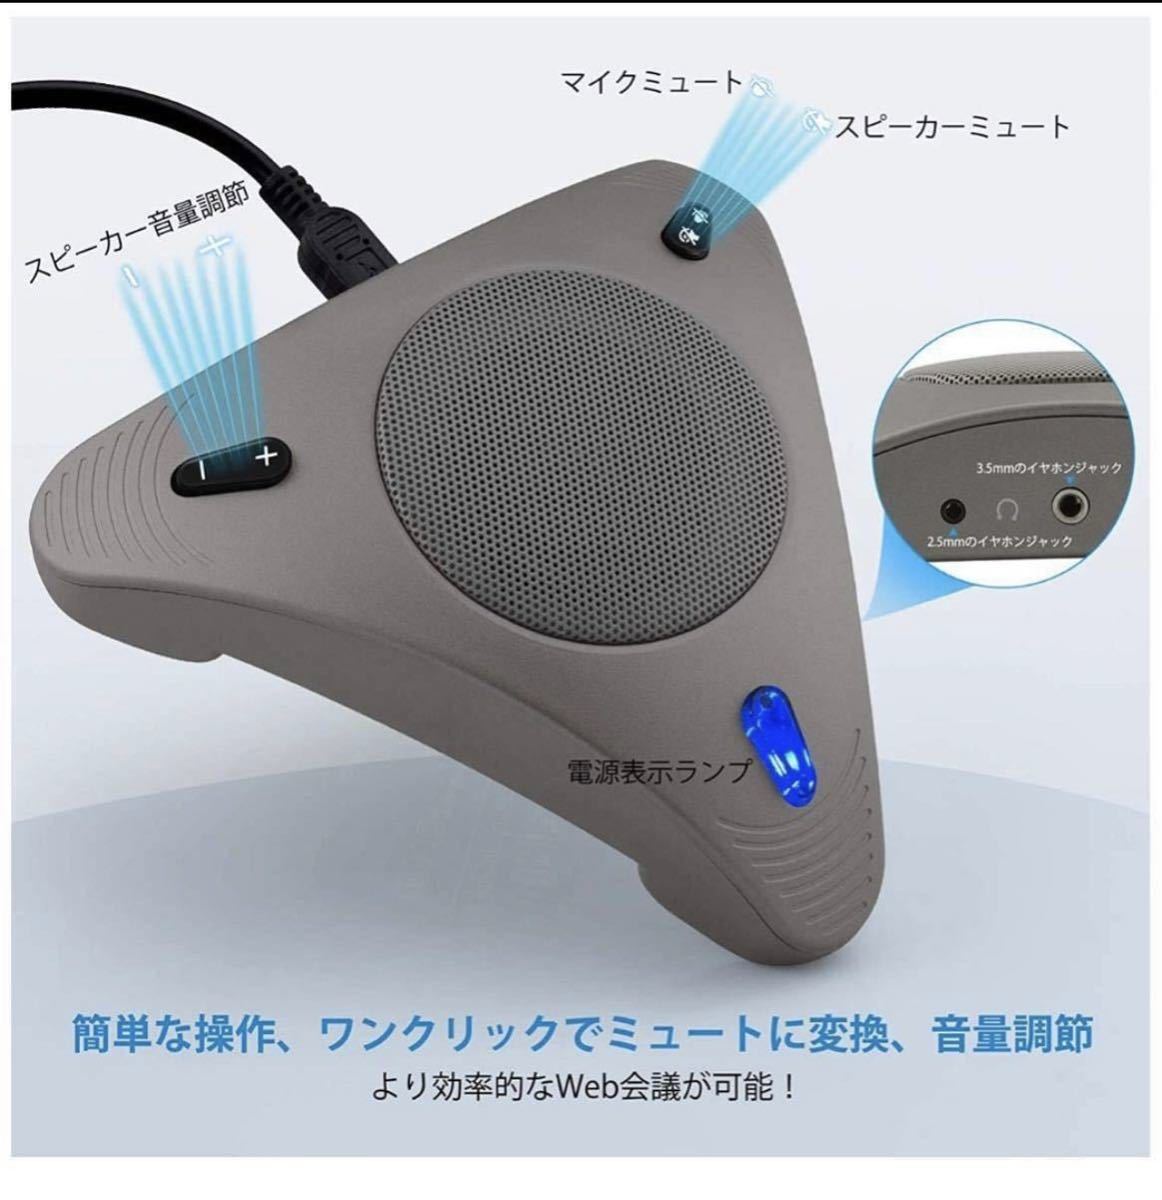 スピーカーフォン 会議用マイクスピーカー 双方向通話 360全方向集音マイク ノイズキャンセリング PCマイクUSBマイク日本語取扱説明書付き